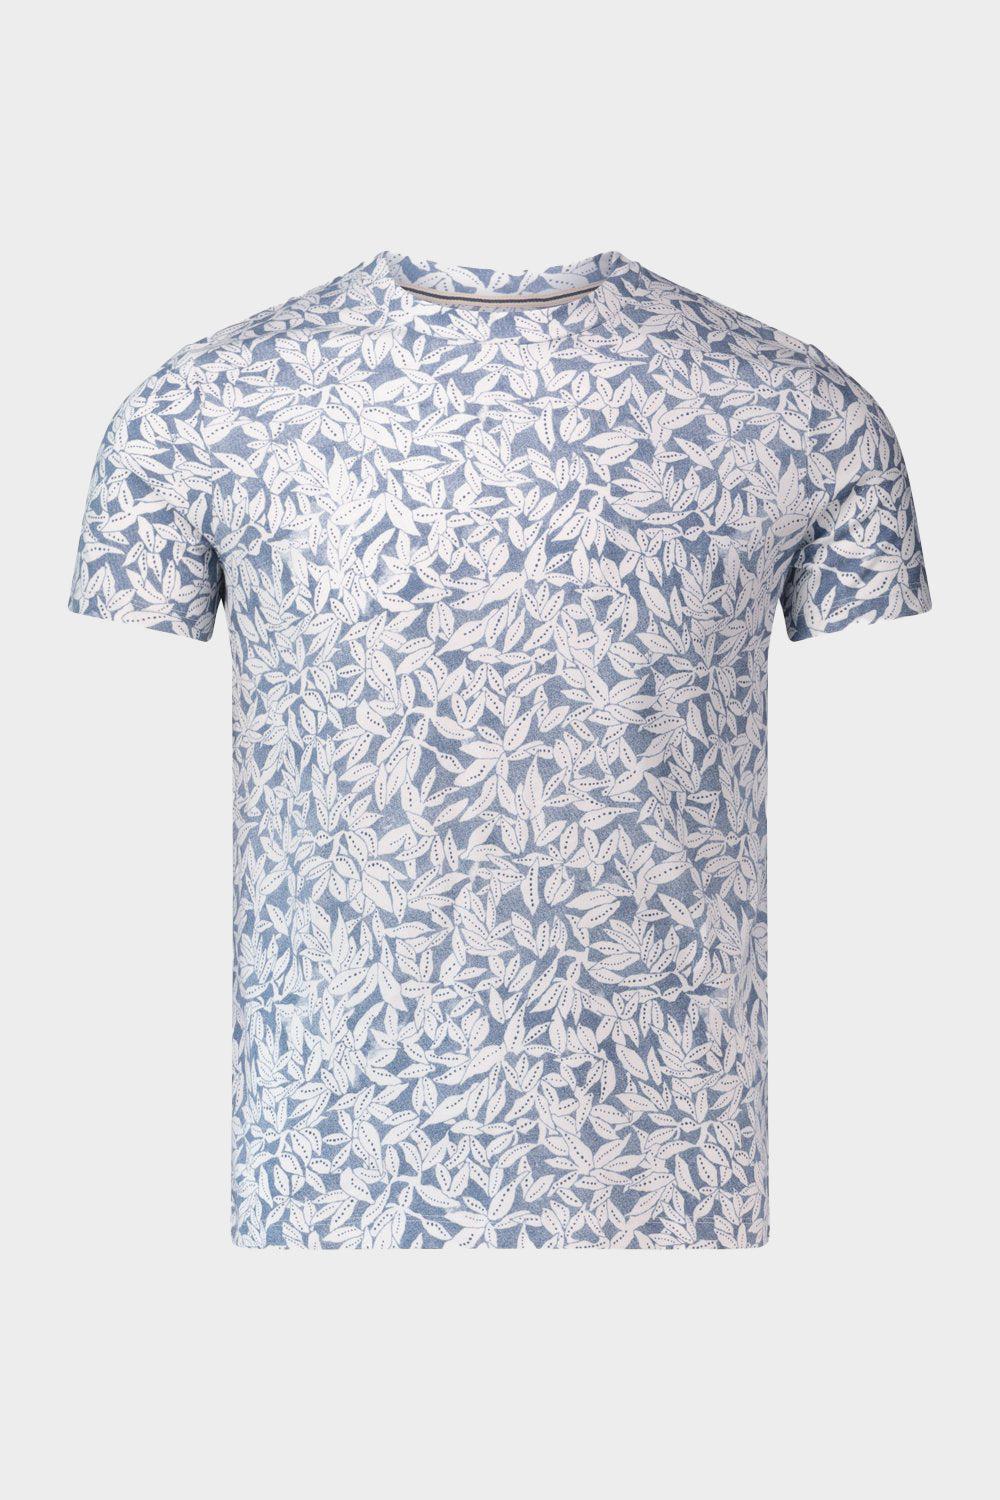 חולצת טי שירט לגברים הדפס עלים MARC O'POLO Vendome online | ונדום .